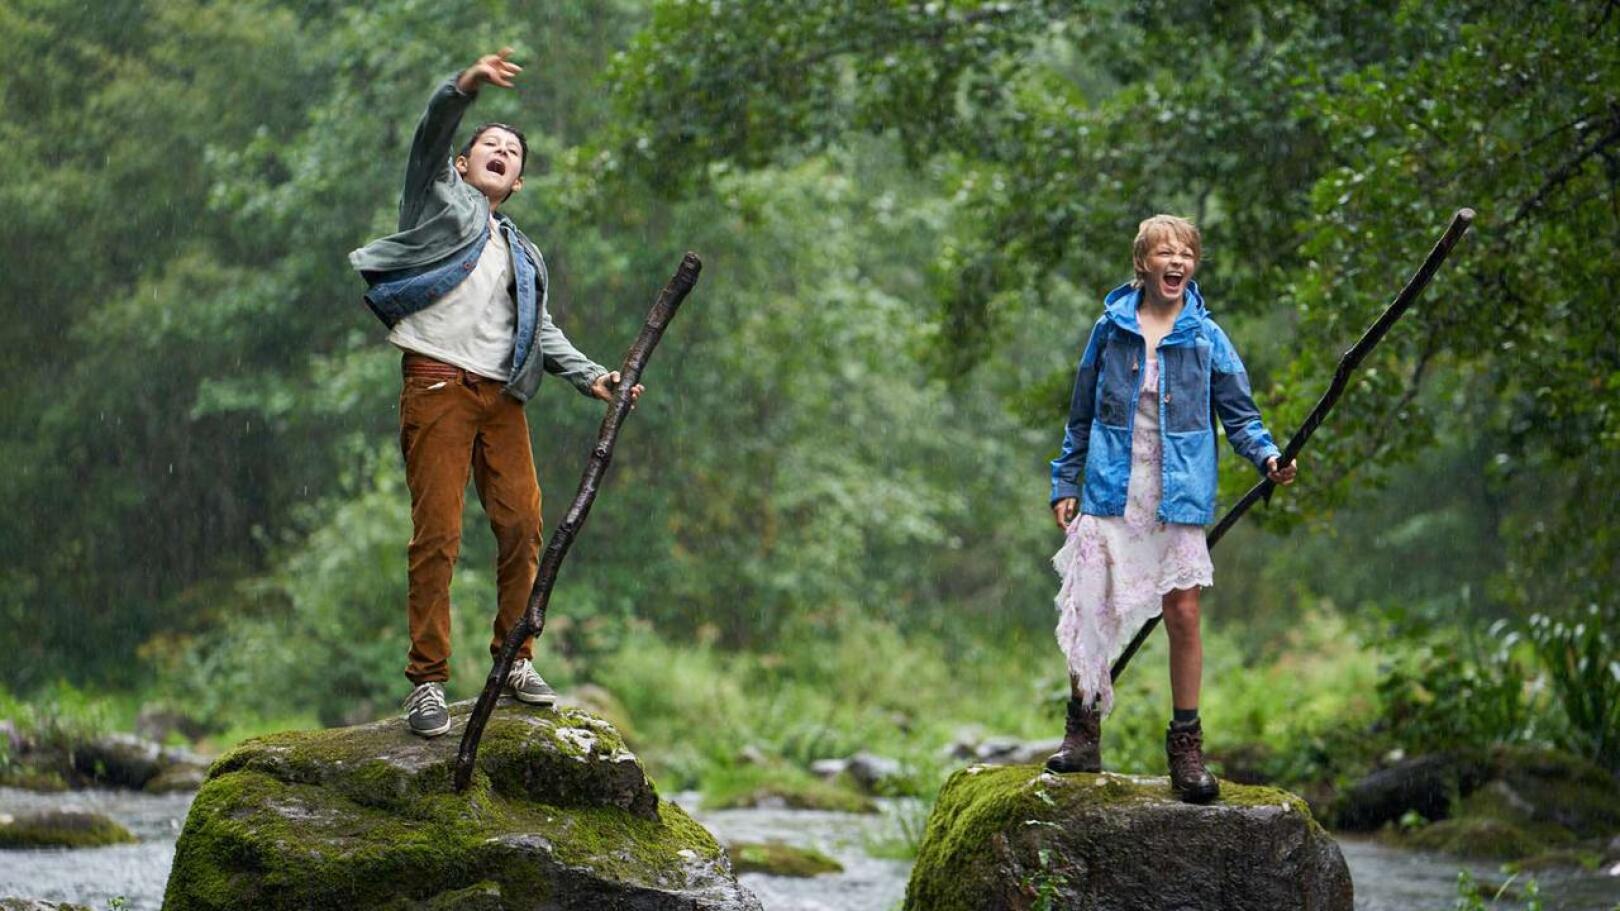 Näkemiin, lapset! Dynaamiset nuoret Aran-Sina Keshvari ja Vilho Rönkkönen ovat Ensilumen seikkailijoina kuin Tom Sawyer ja Huck Finn.